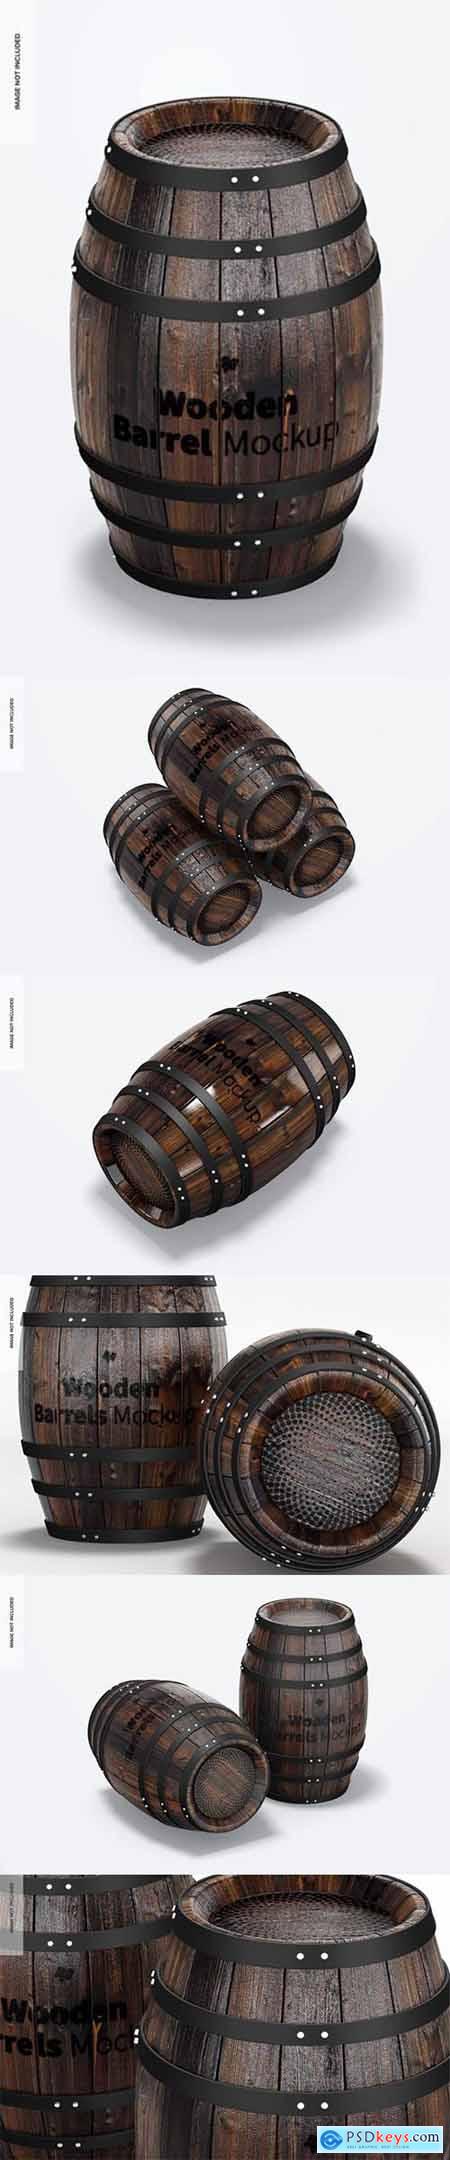 Wooden barrels mockup